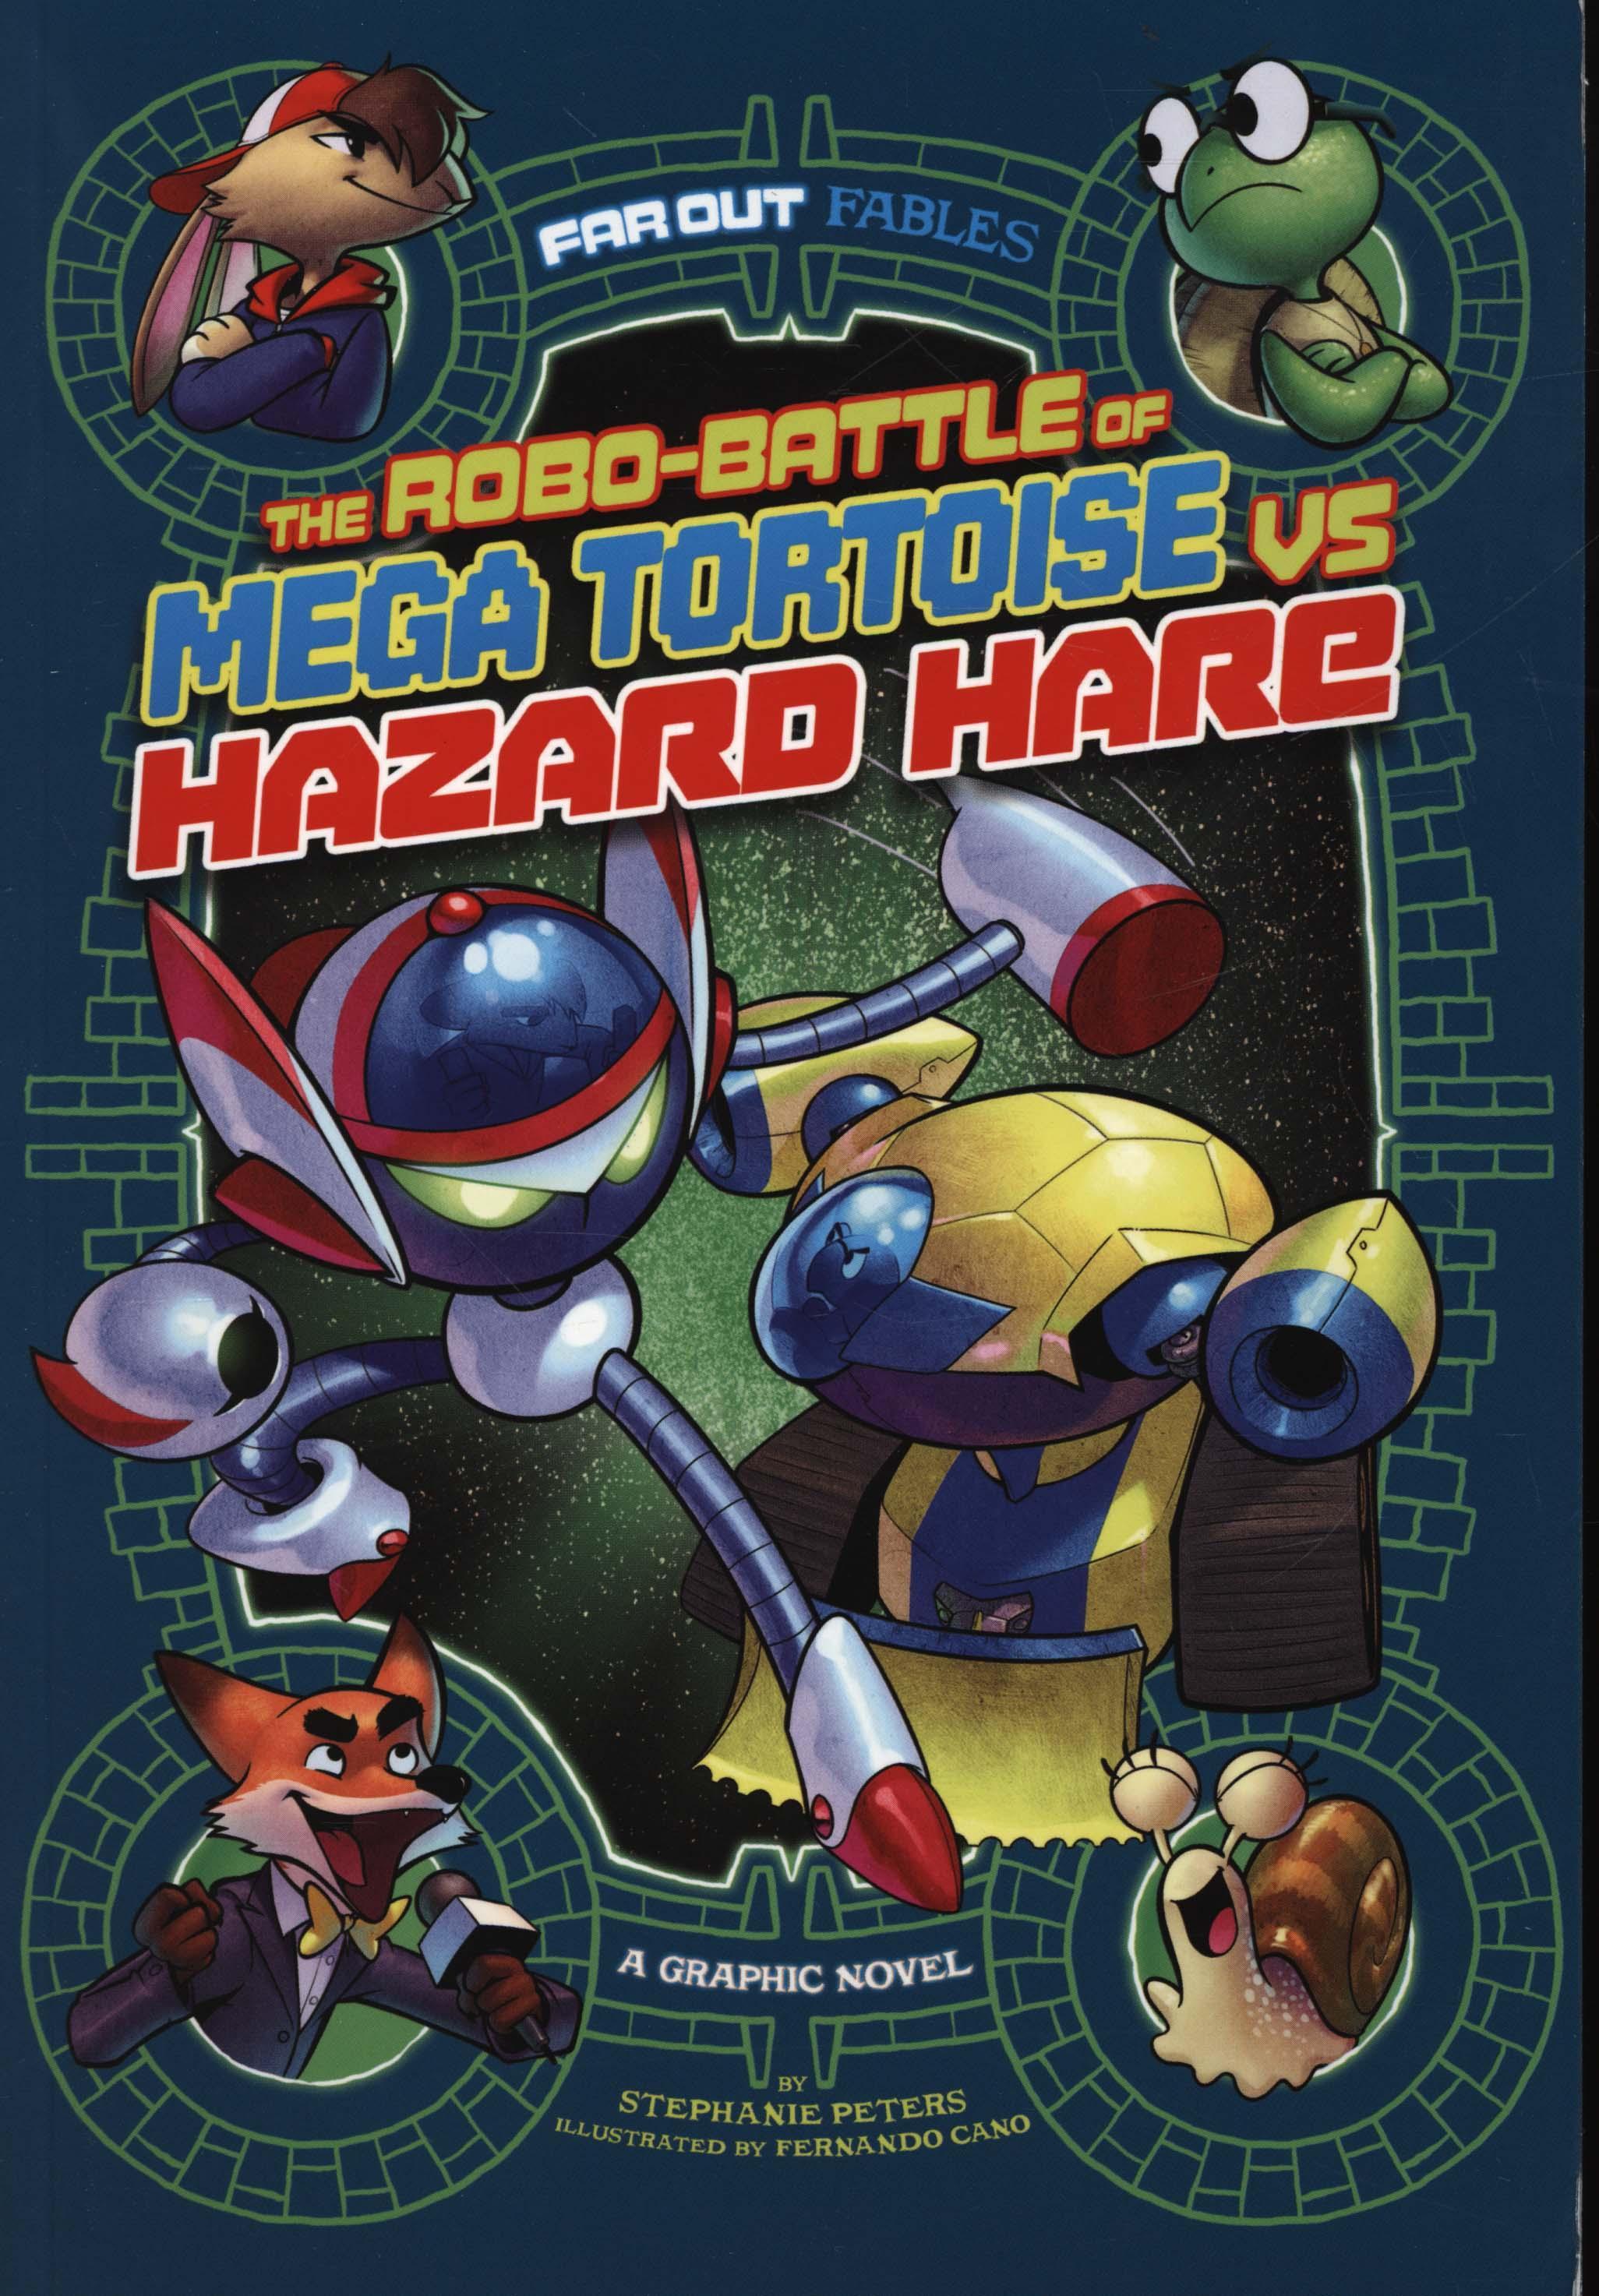 Robo-battle of Mega Tortoise vs Hazard Hare